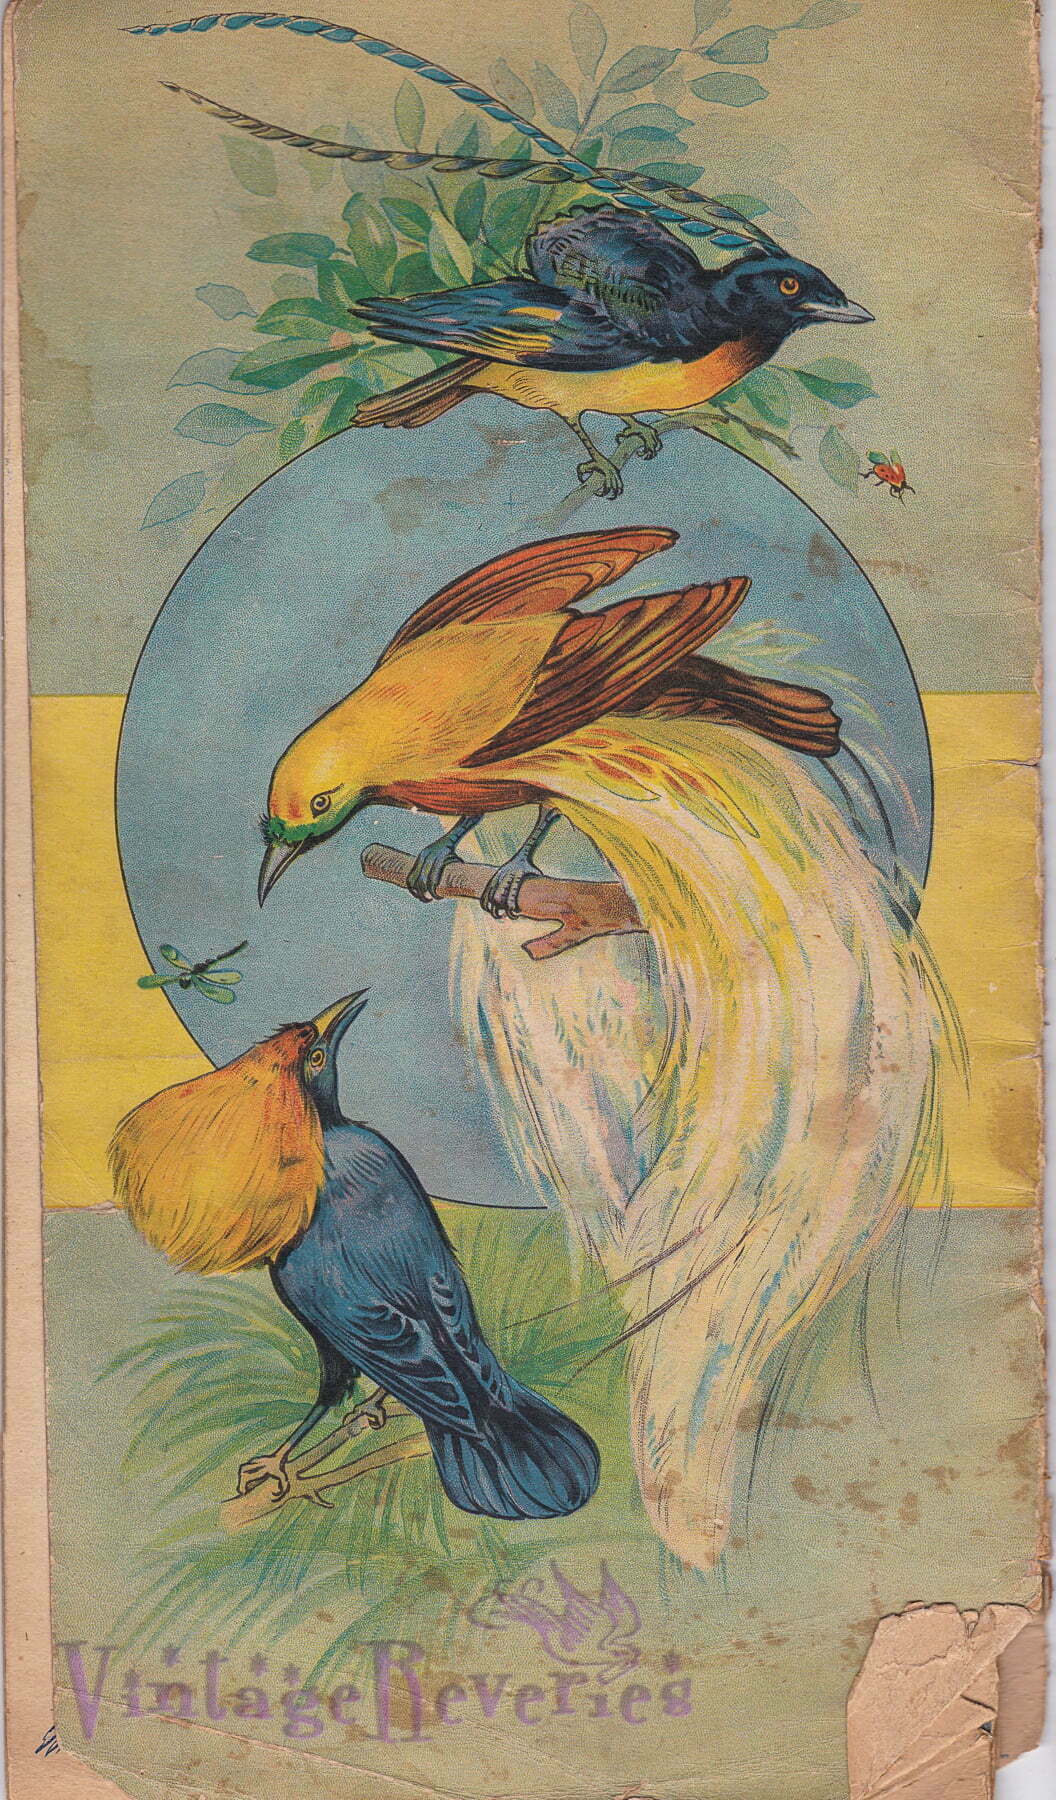 Turn of the century bird illustration